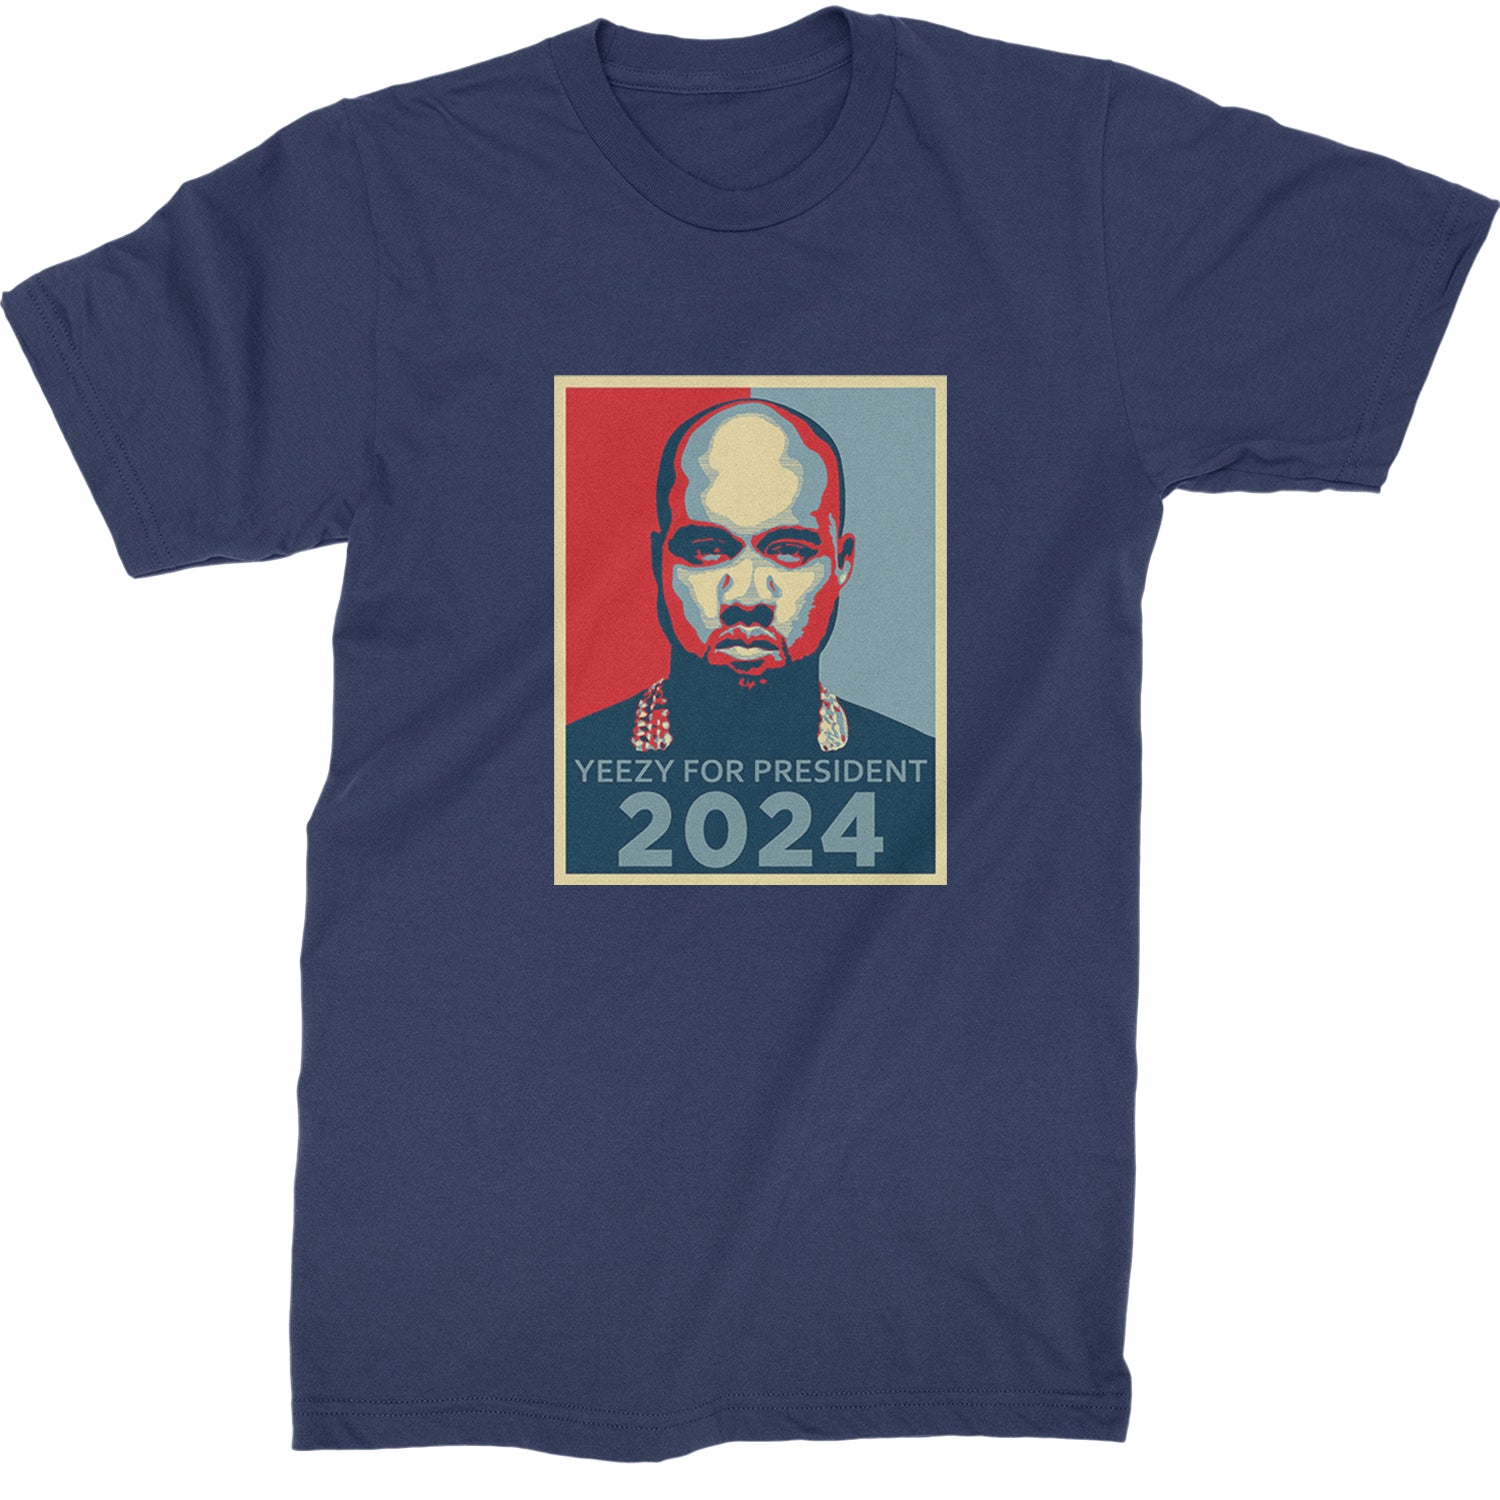 Yeezus For President Vote for Ye Mens T-shirt Navy Blue